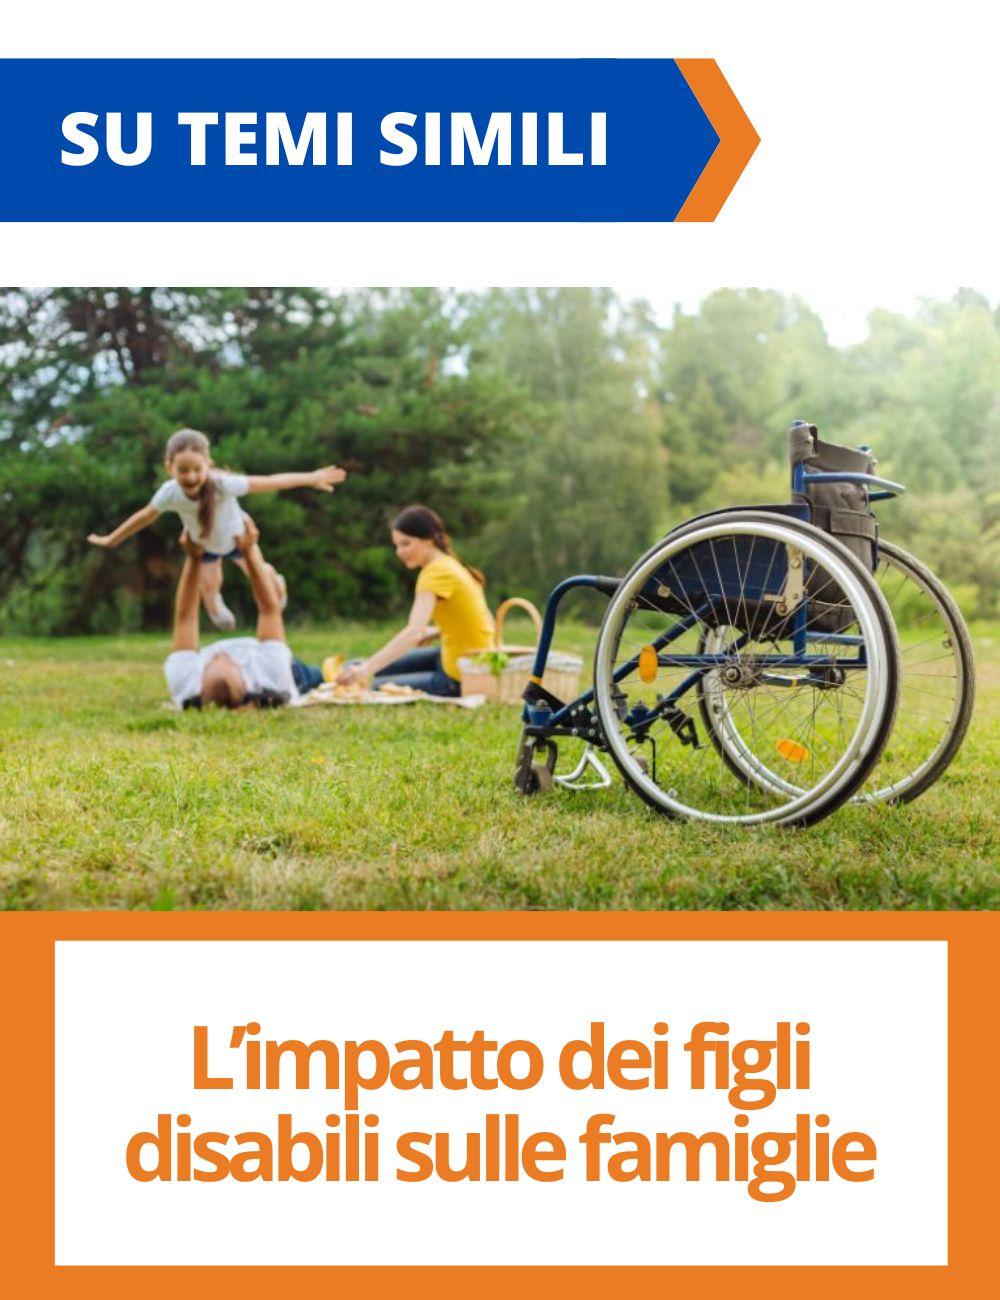 Immagine con link ad articoli su temi simili. L'immagine di una famiglia e una sedia a rotelle rimanda all'articolo intitolato: L'impatto dei figli disabili sulle famiglie